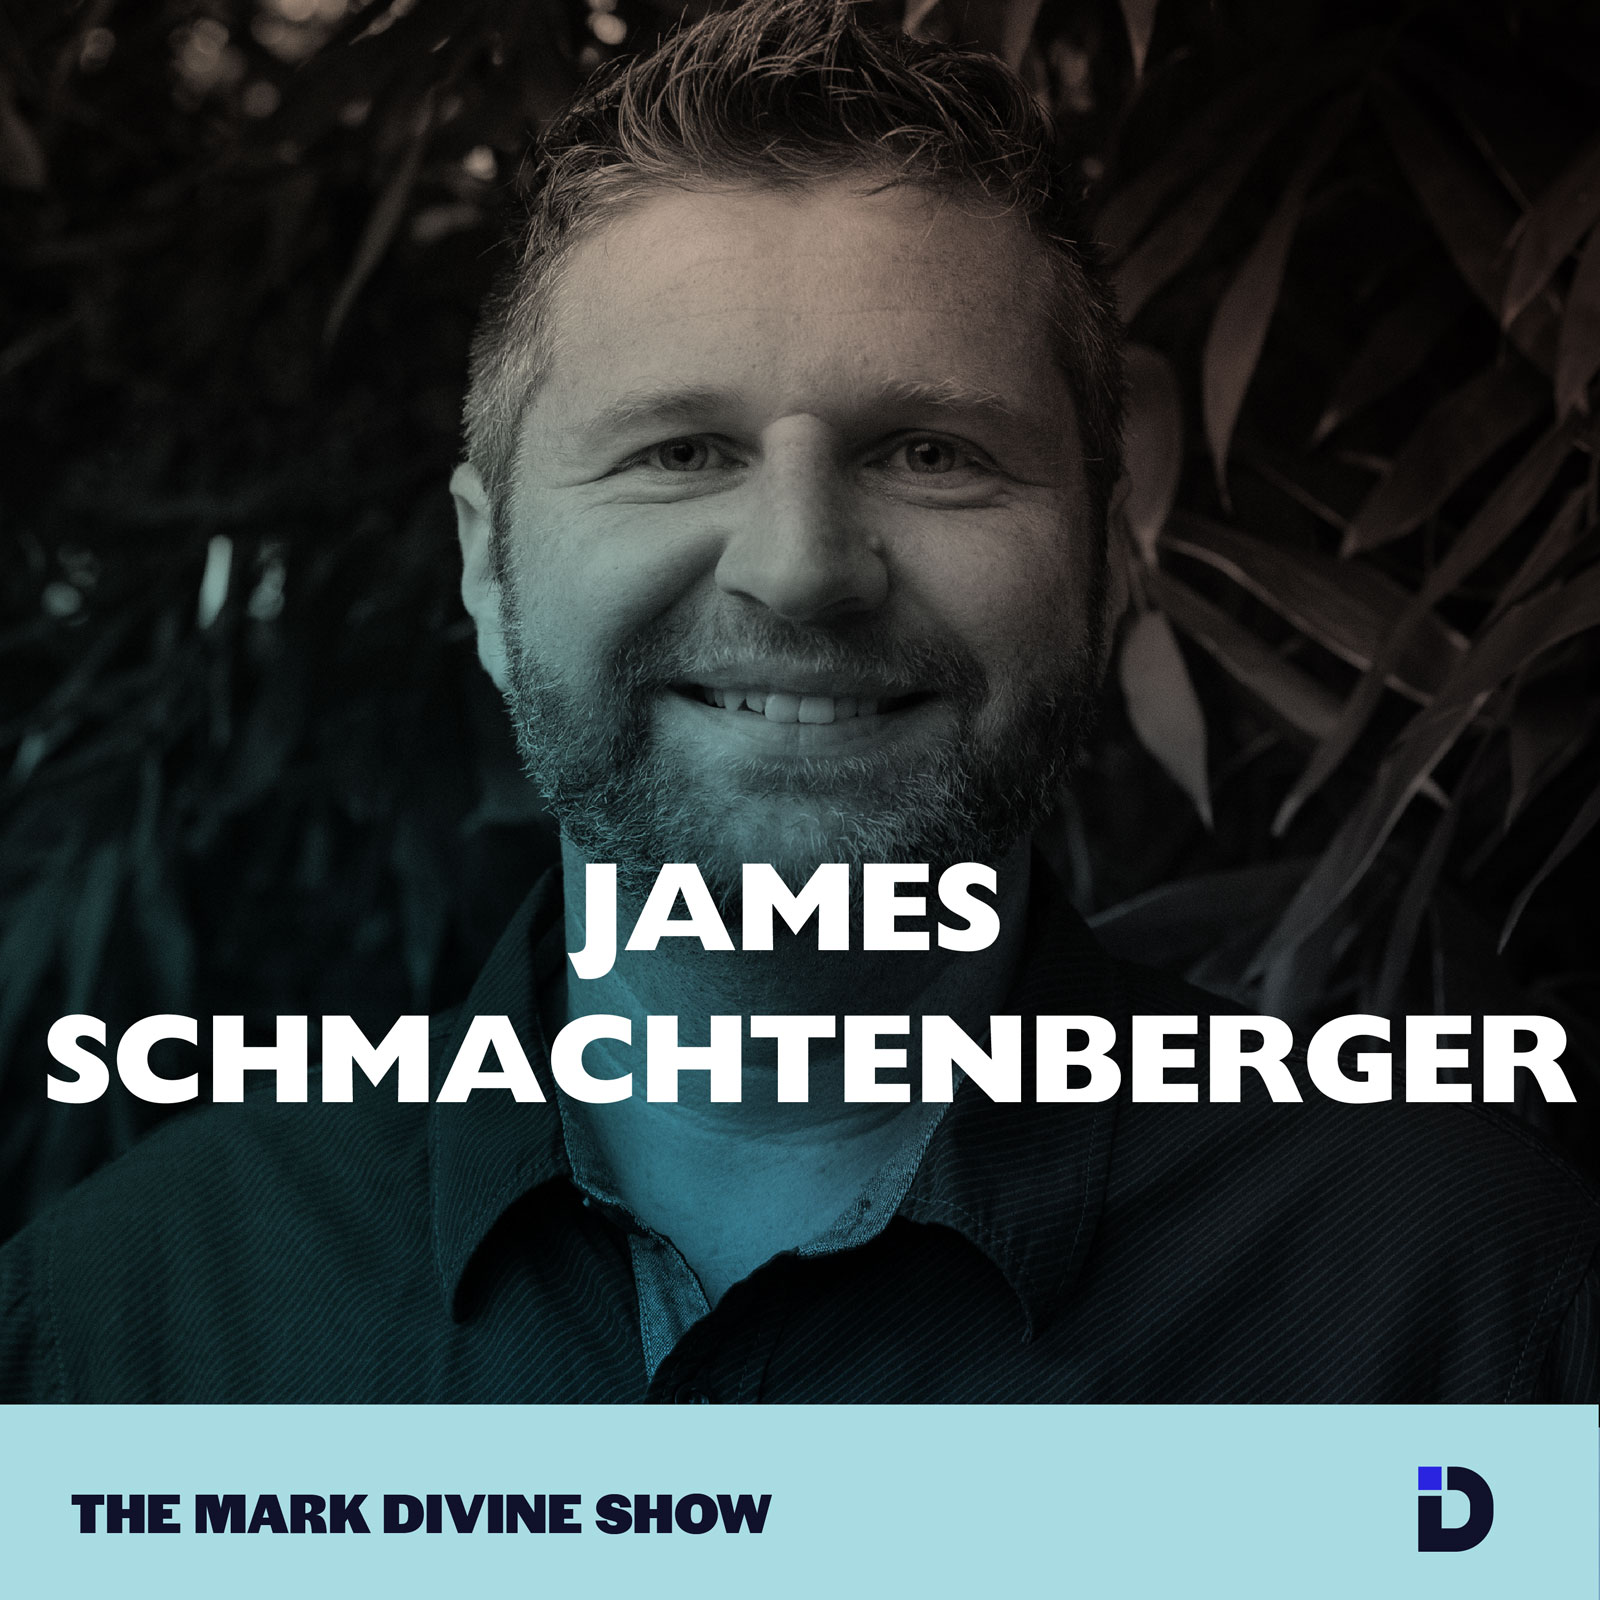 James Schmachtenberger